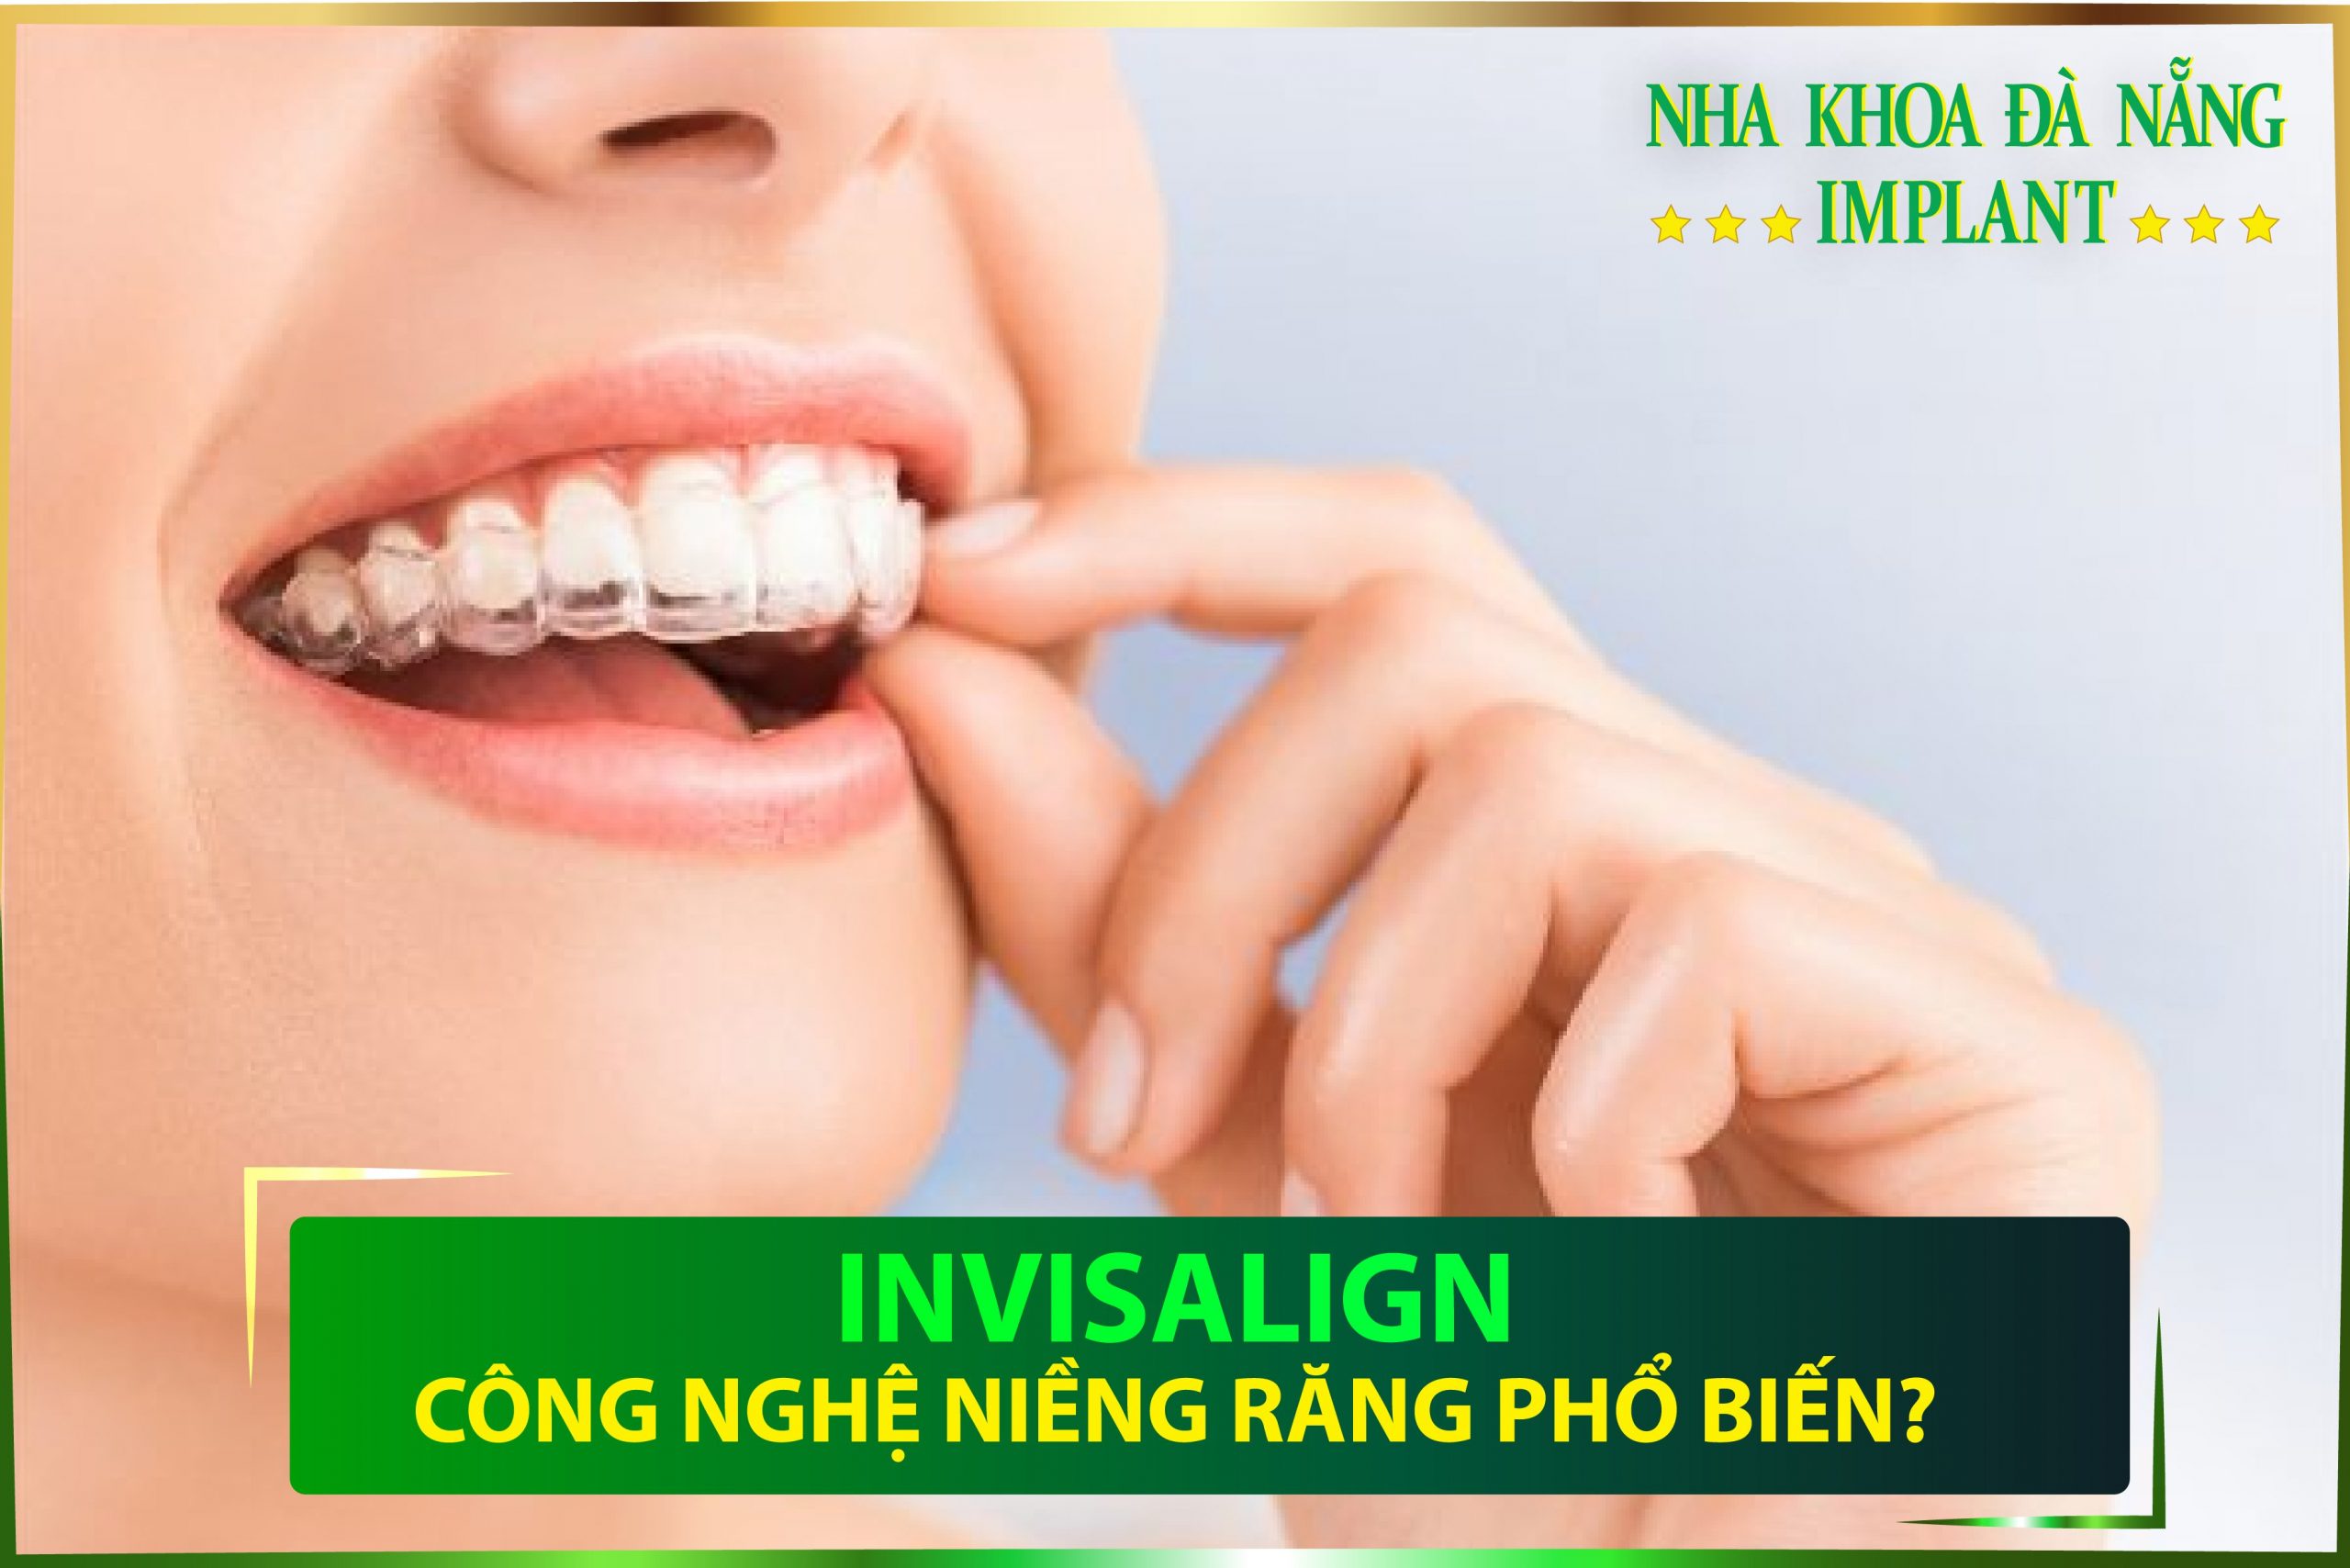 Niềng răng trong suốt Invisalign sử dụng các “khay” trong suốt mang lại thẩm mỹ tối đa